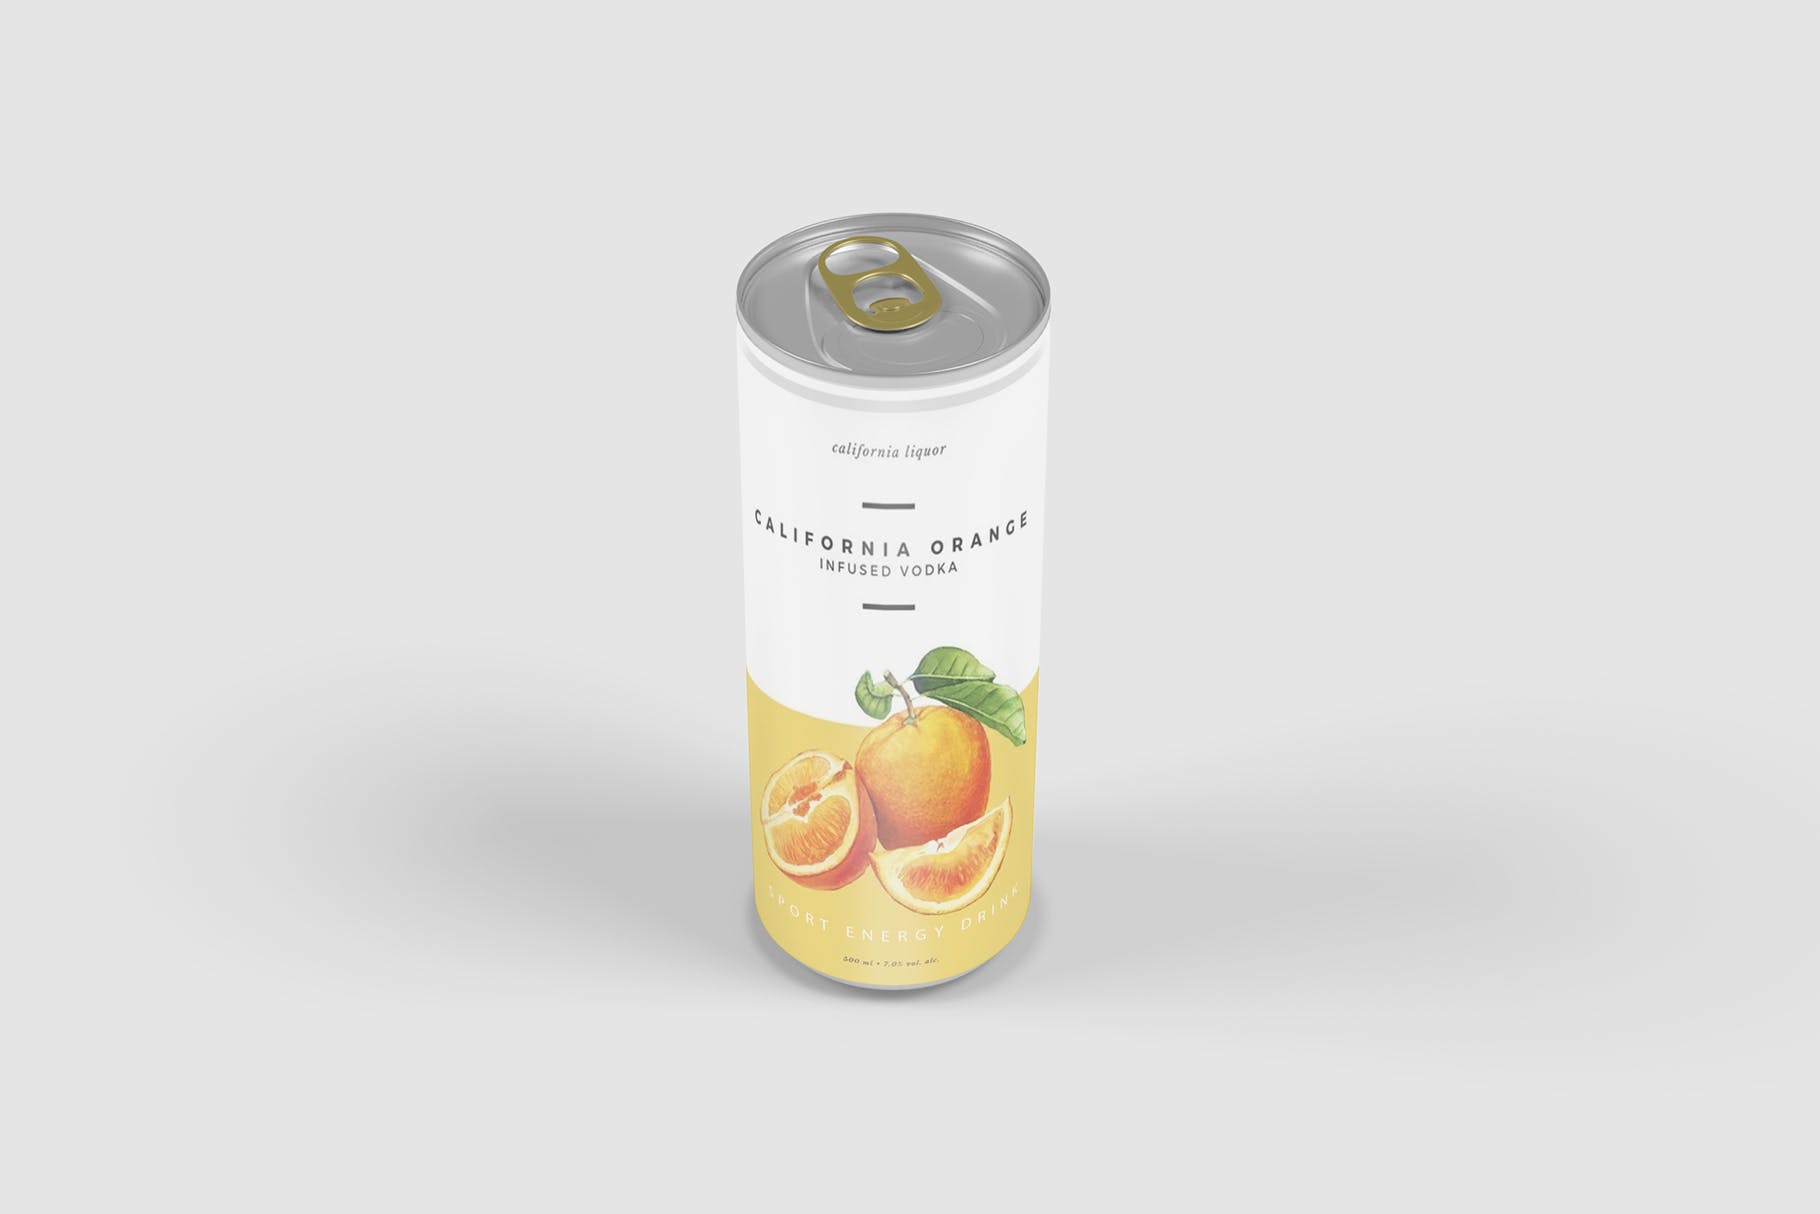 软饮料罐头产品外观设计第一素材精选 Softdrink Can Product Mockup插图(1)